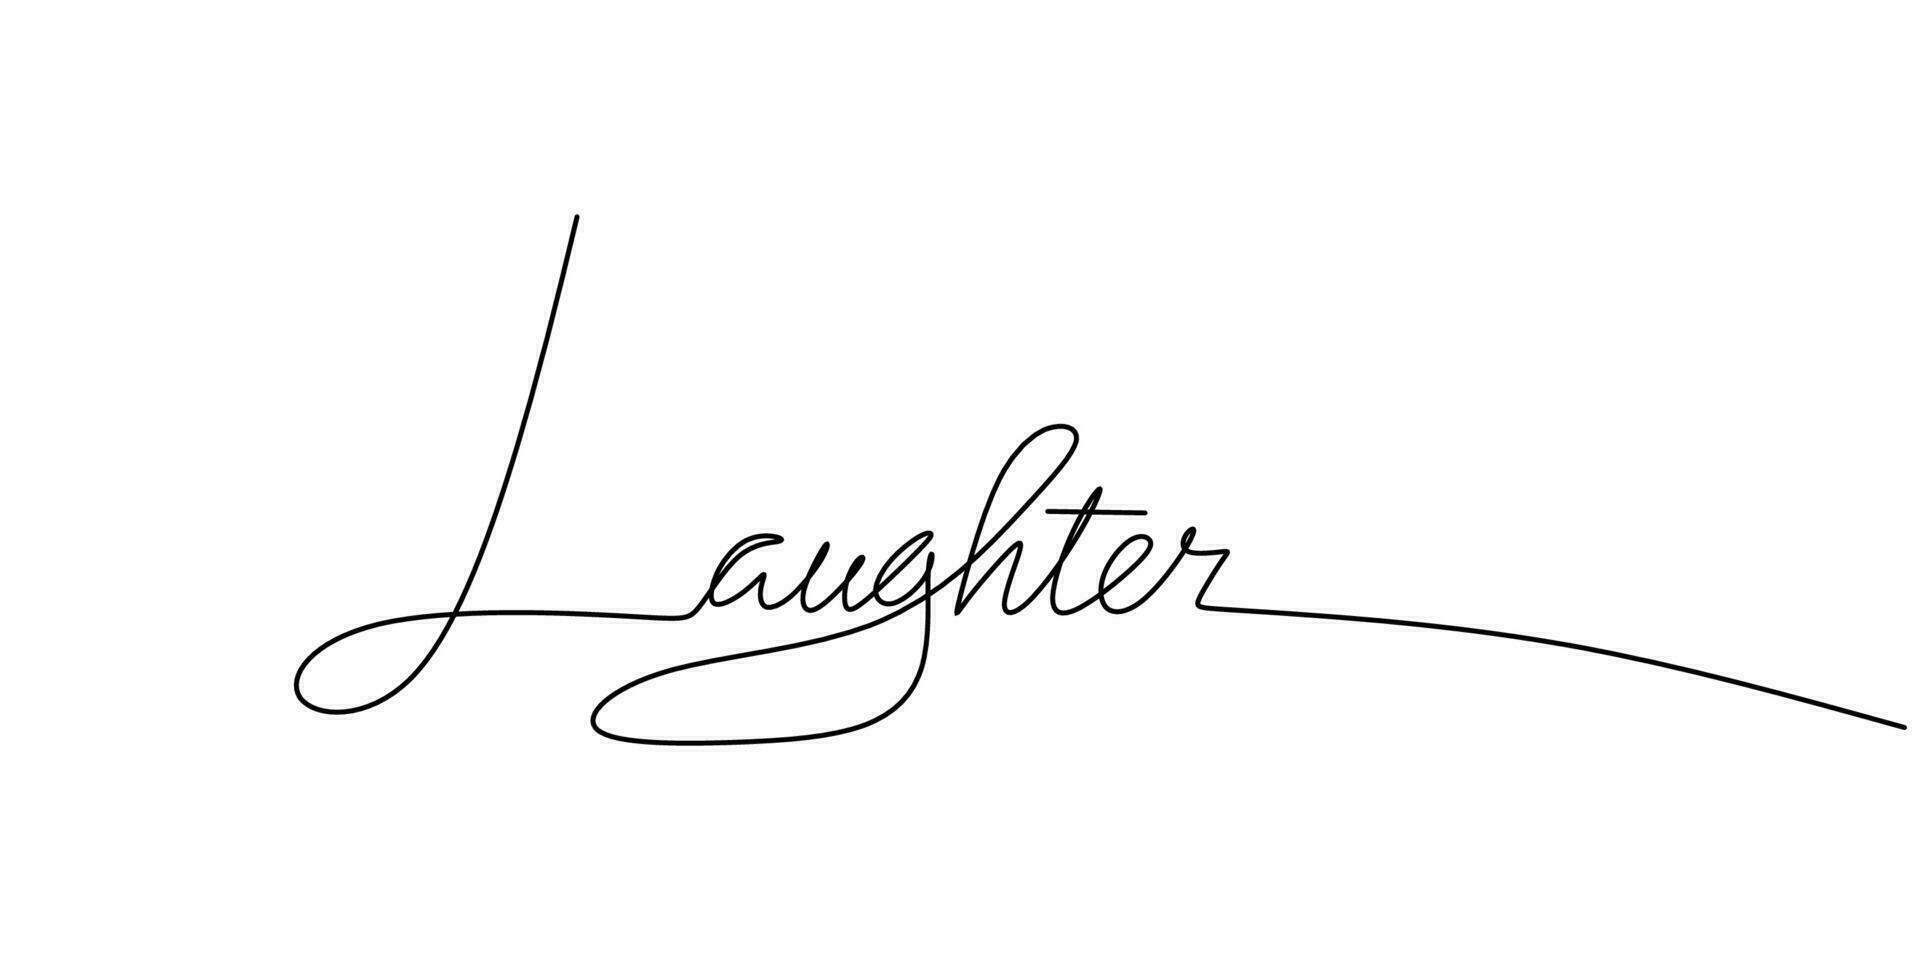 ett kontinuerlig linje teckning typografi linje konst av skratt ord vektor